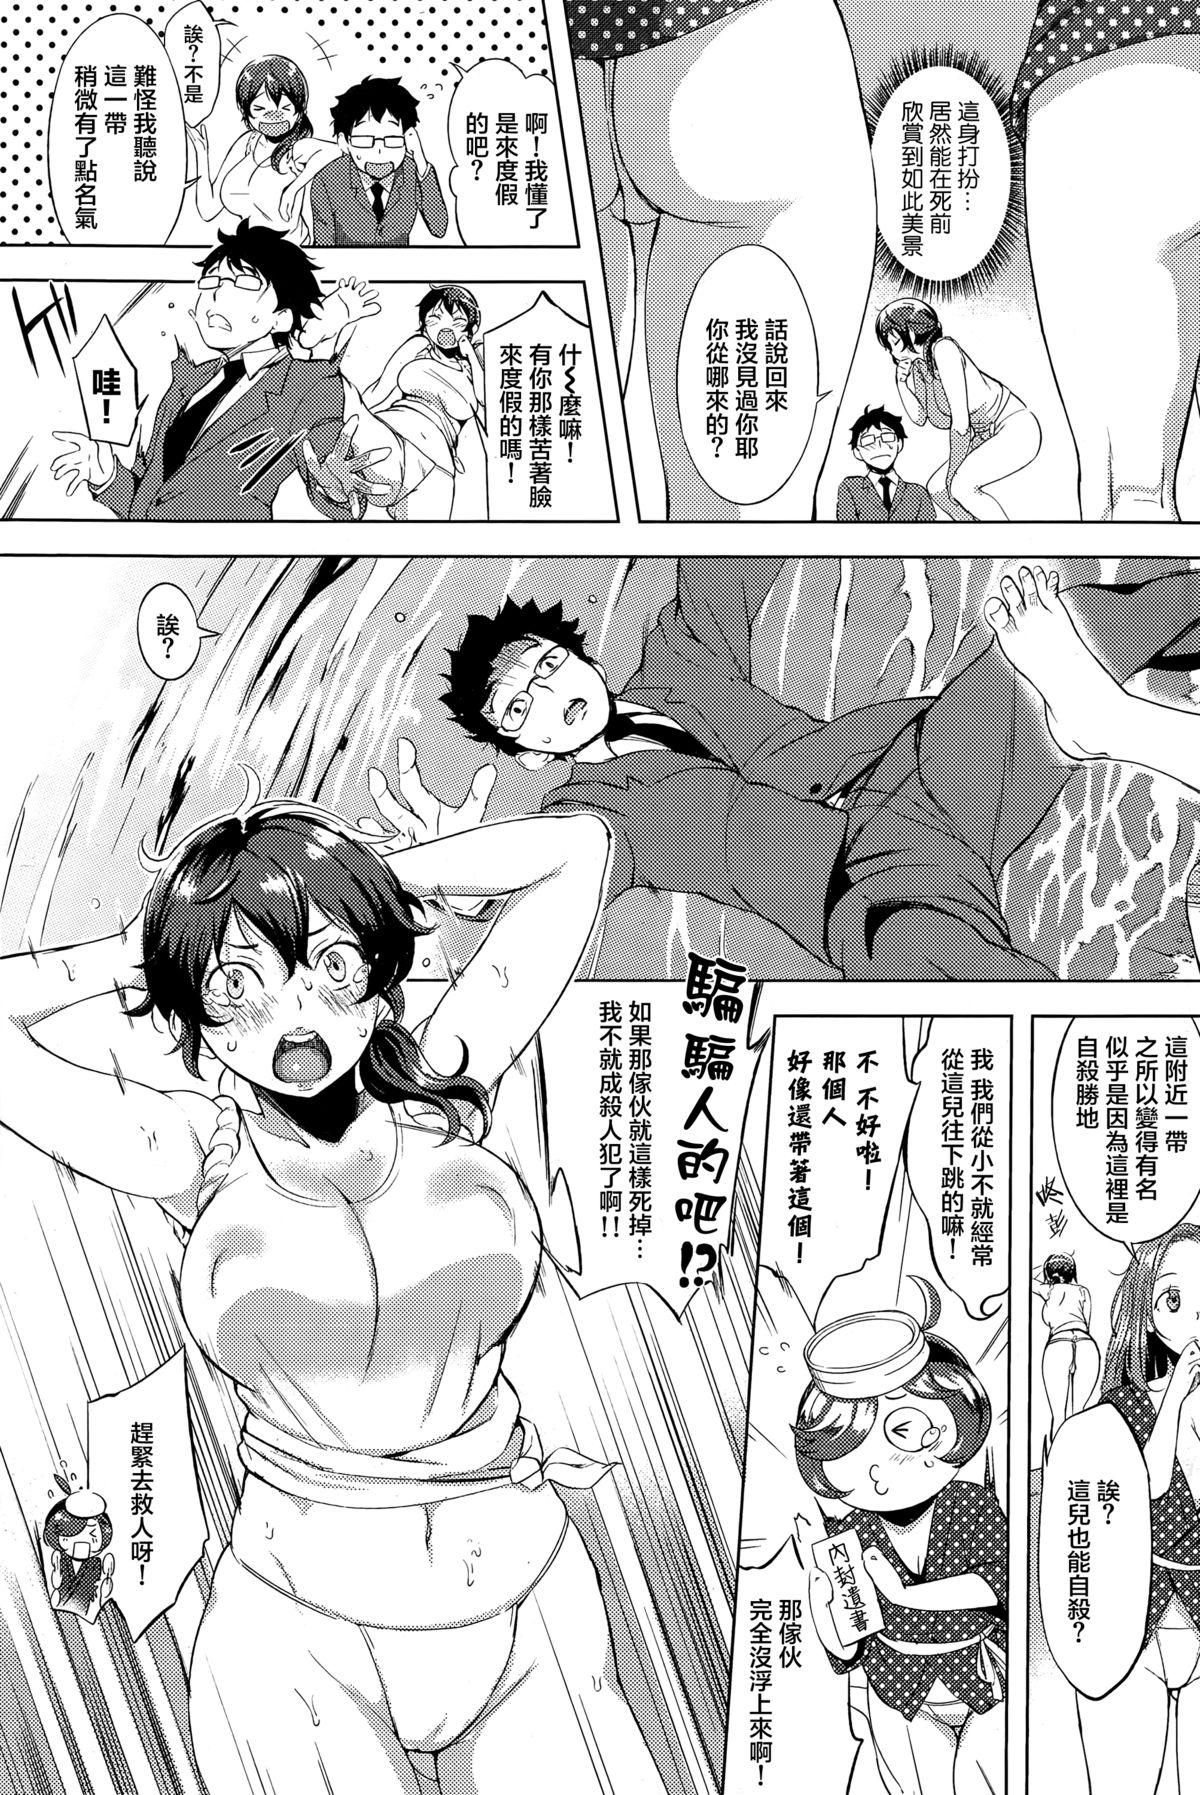 Gorgeous Boku no Mermaid Jockstrap - Page 3